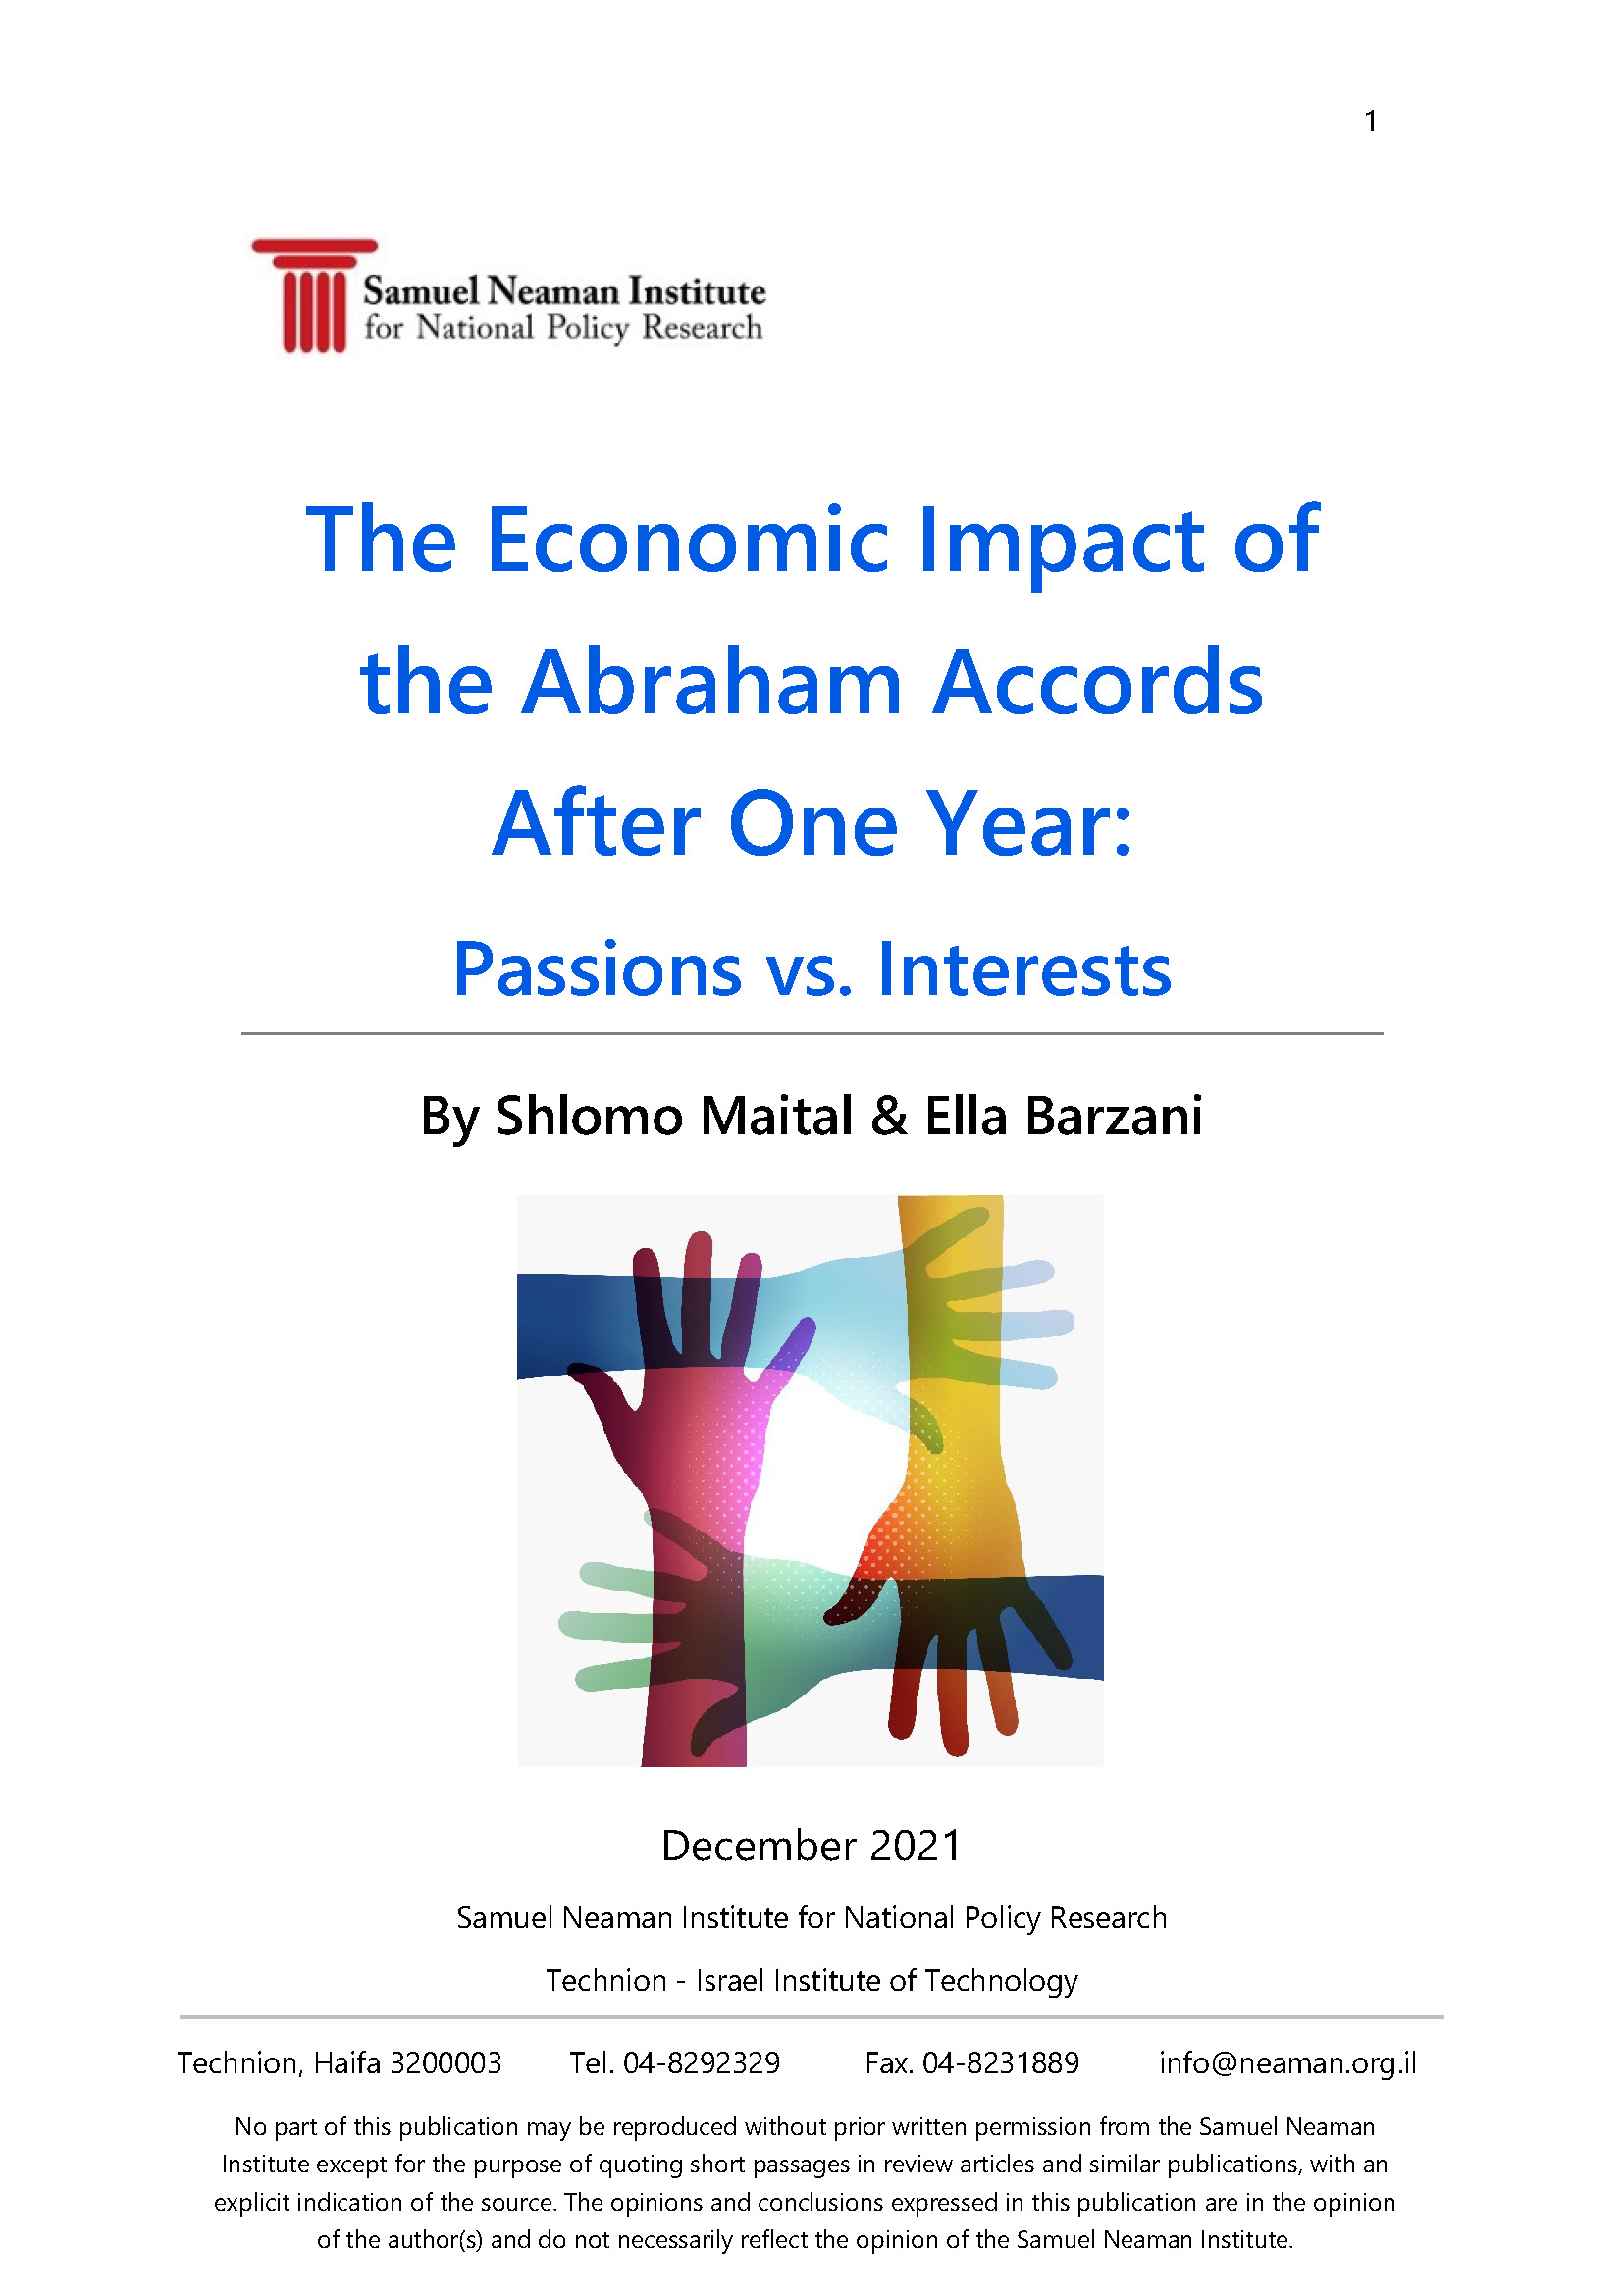 האימפקט הכלכלי של הסכמי אברהם - לאחר שנה ראשונה: אמוציות לעומת אינטרסים